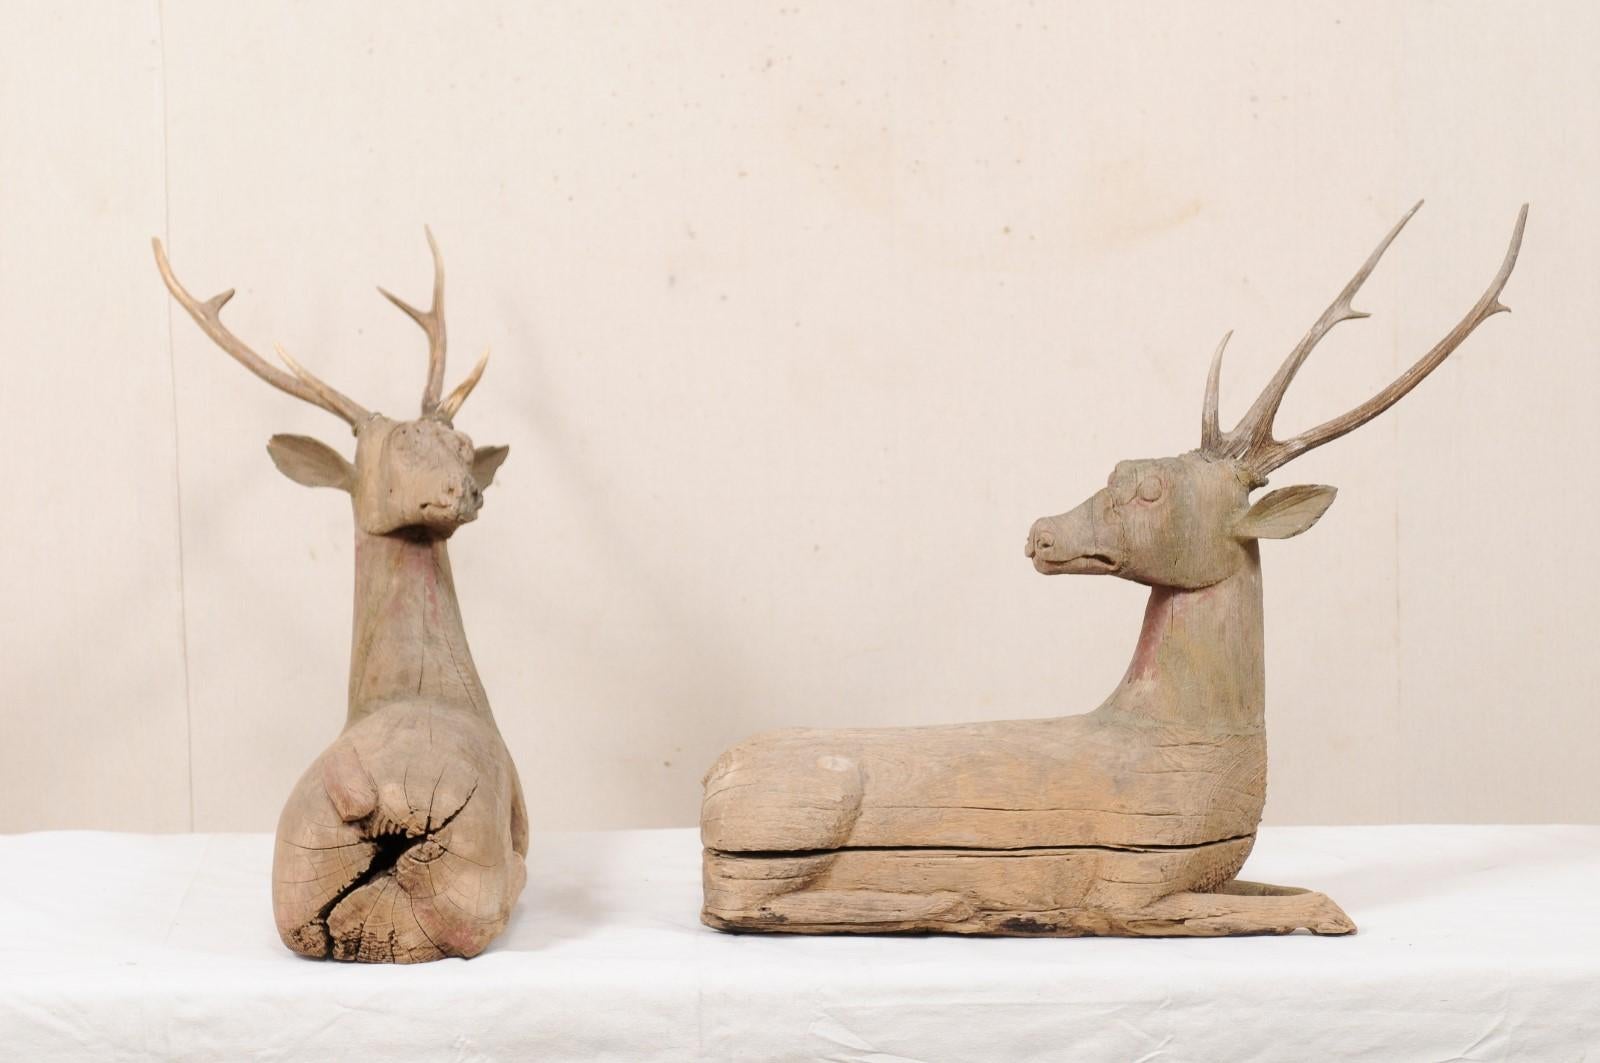 carved wooden reindeer